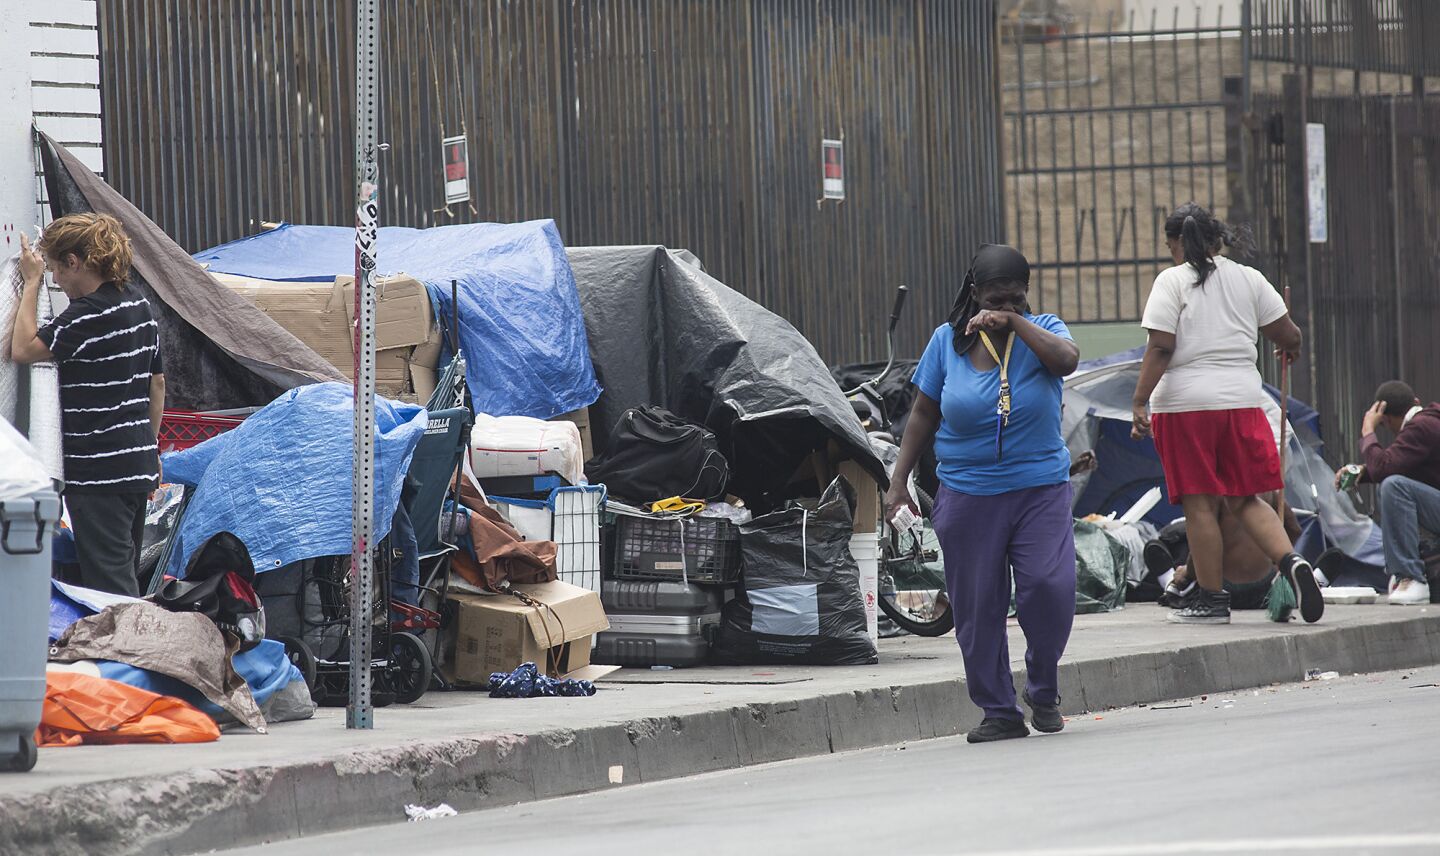 Homeless crisis